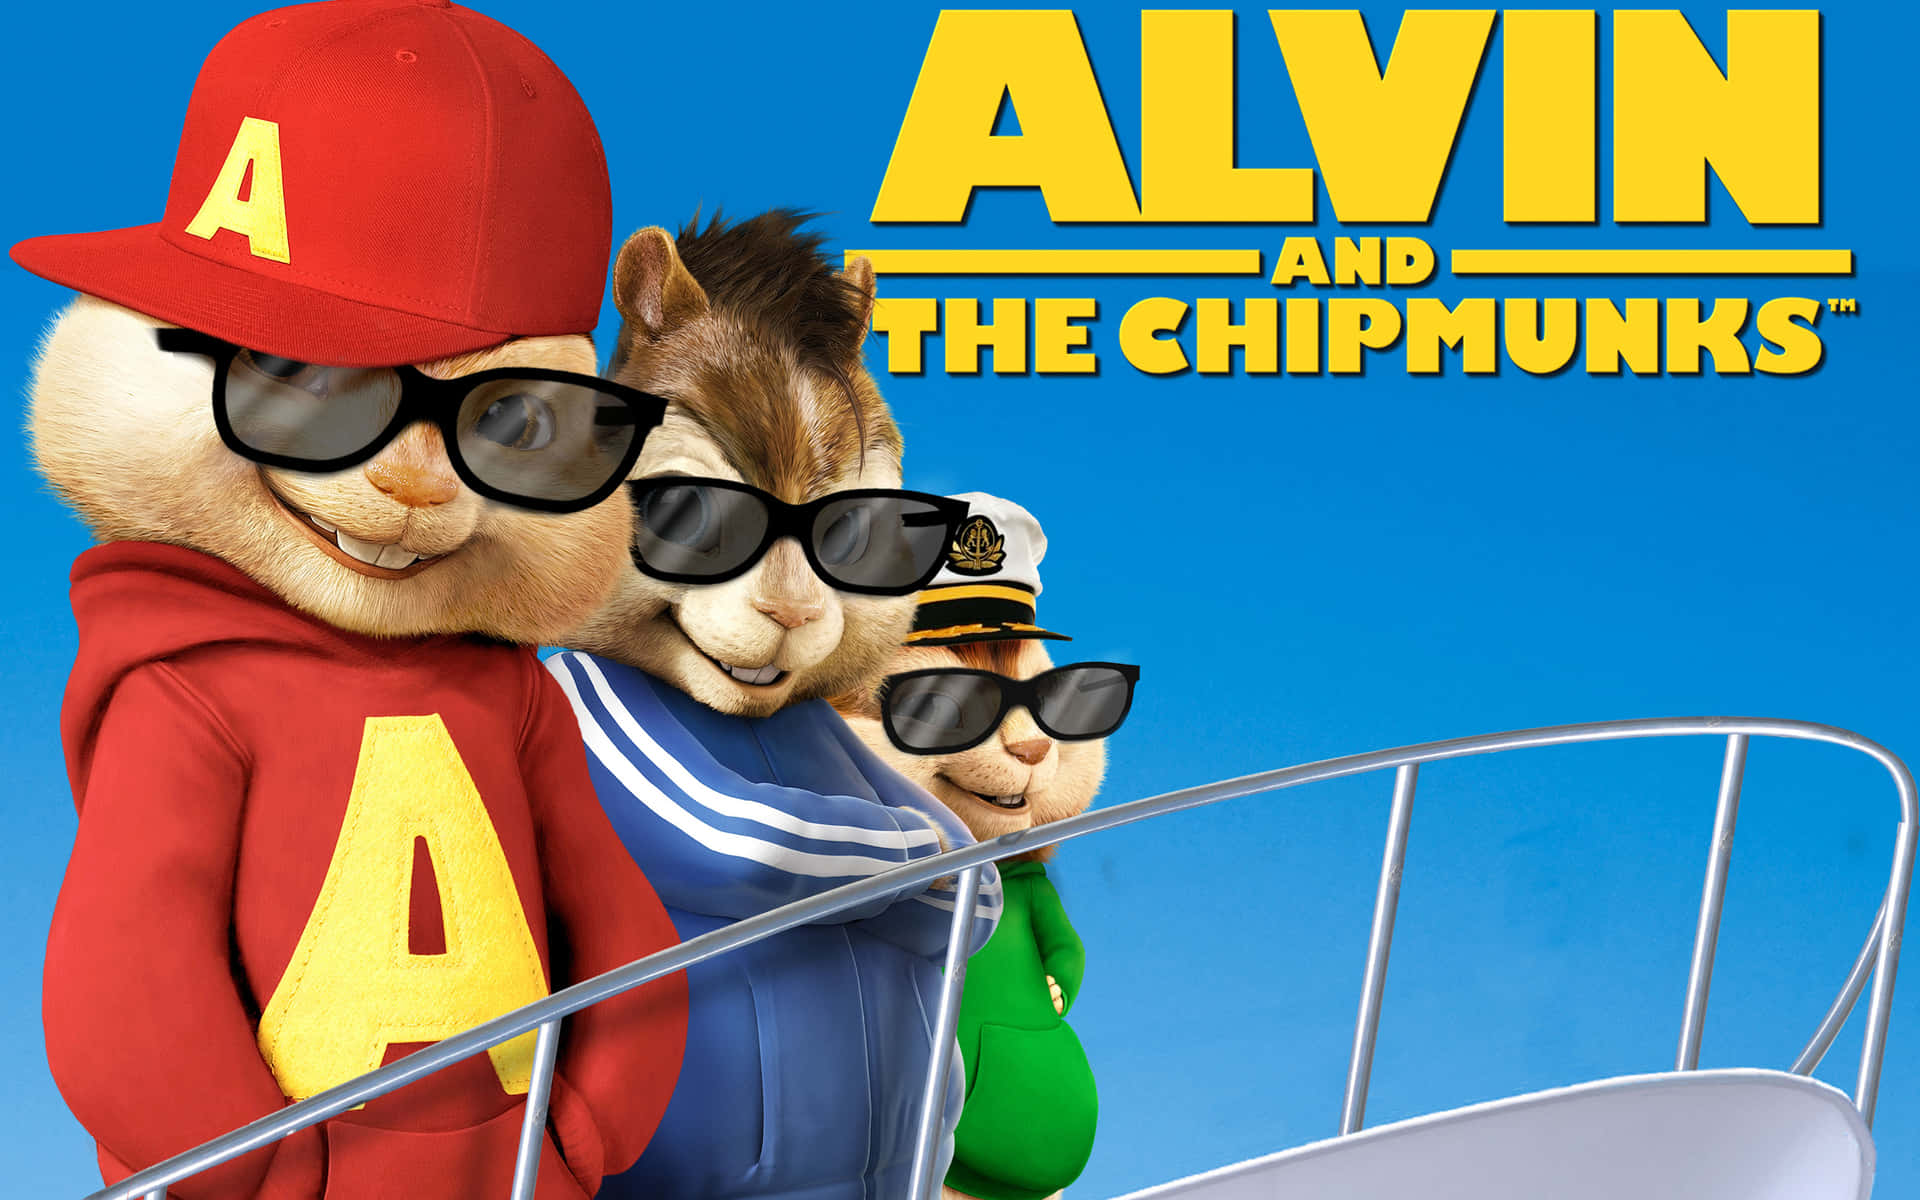 Syngernoget Glad Og Sjovt Med Alvin Og Chipmunks På Computer- Eller Mobilbaggrunden.